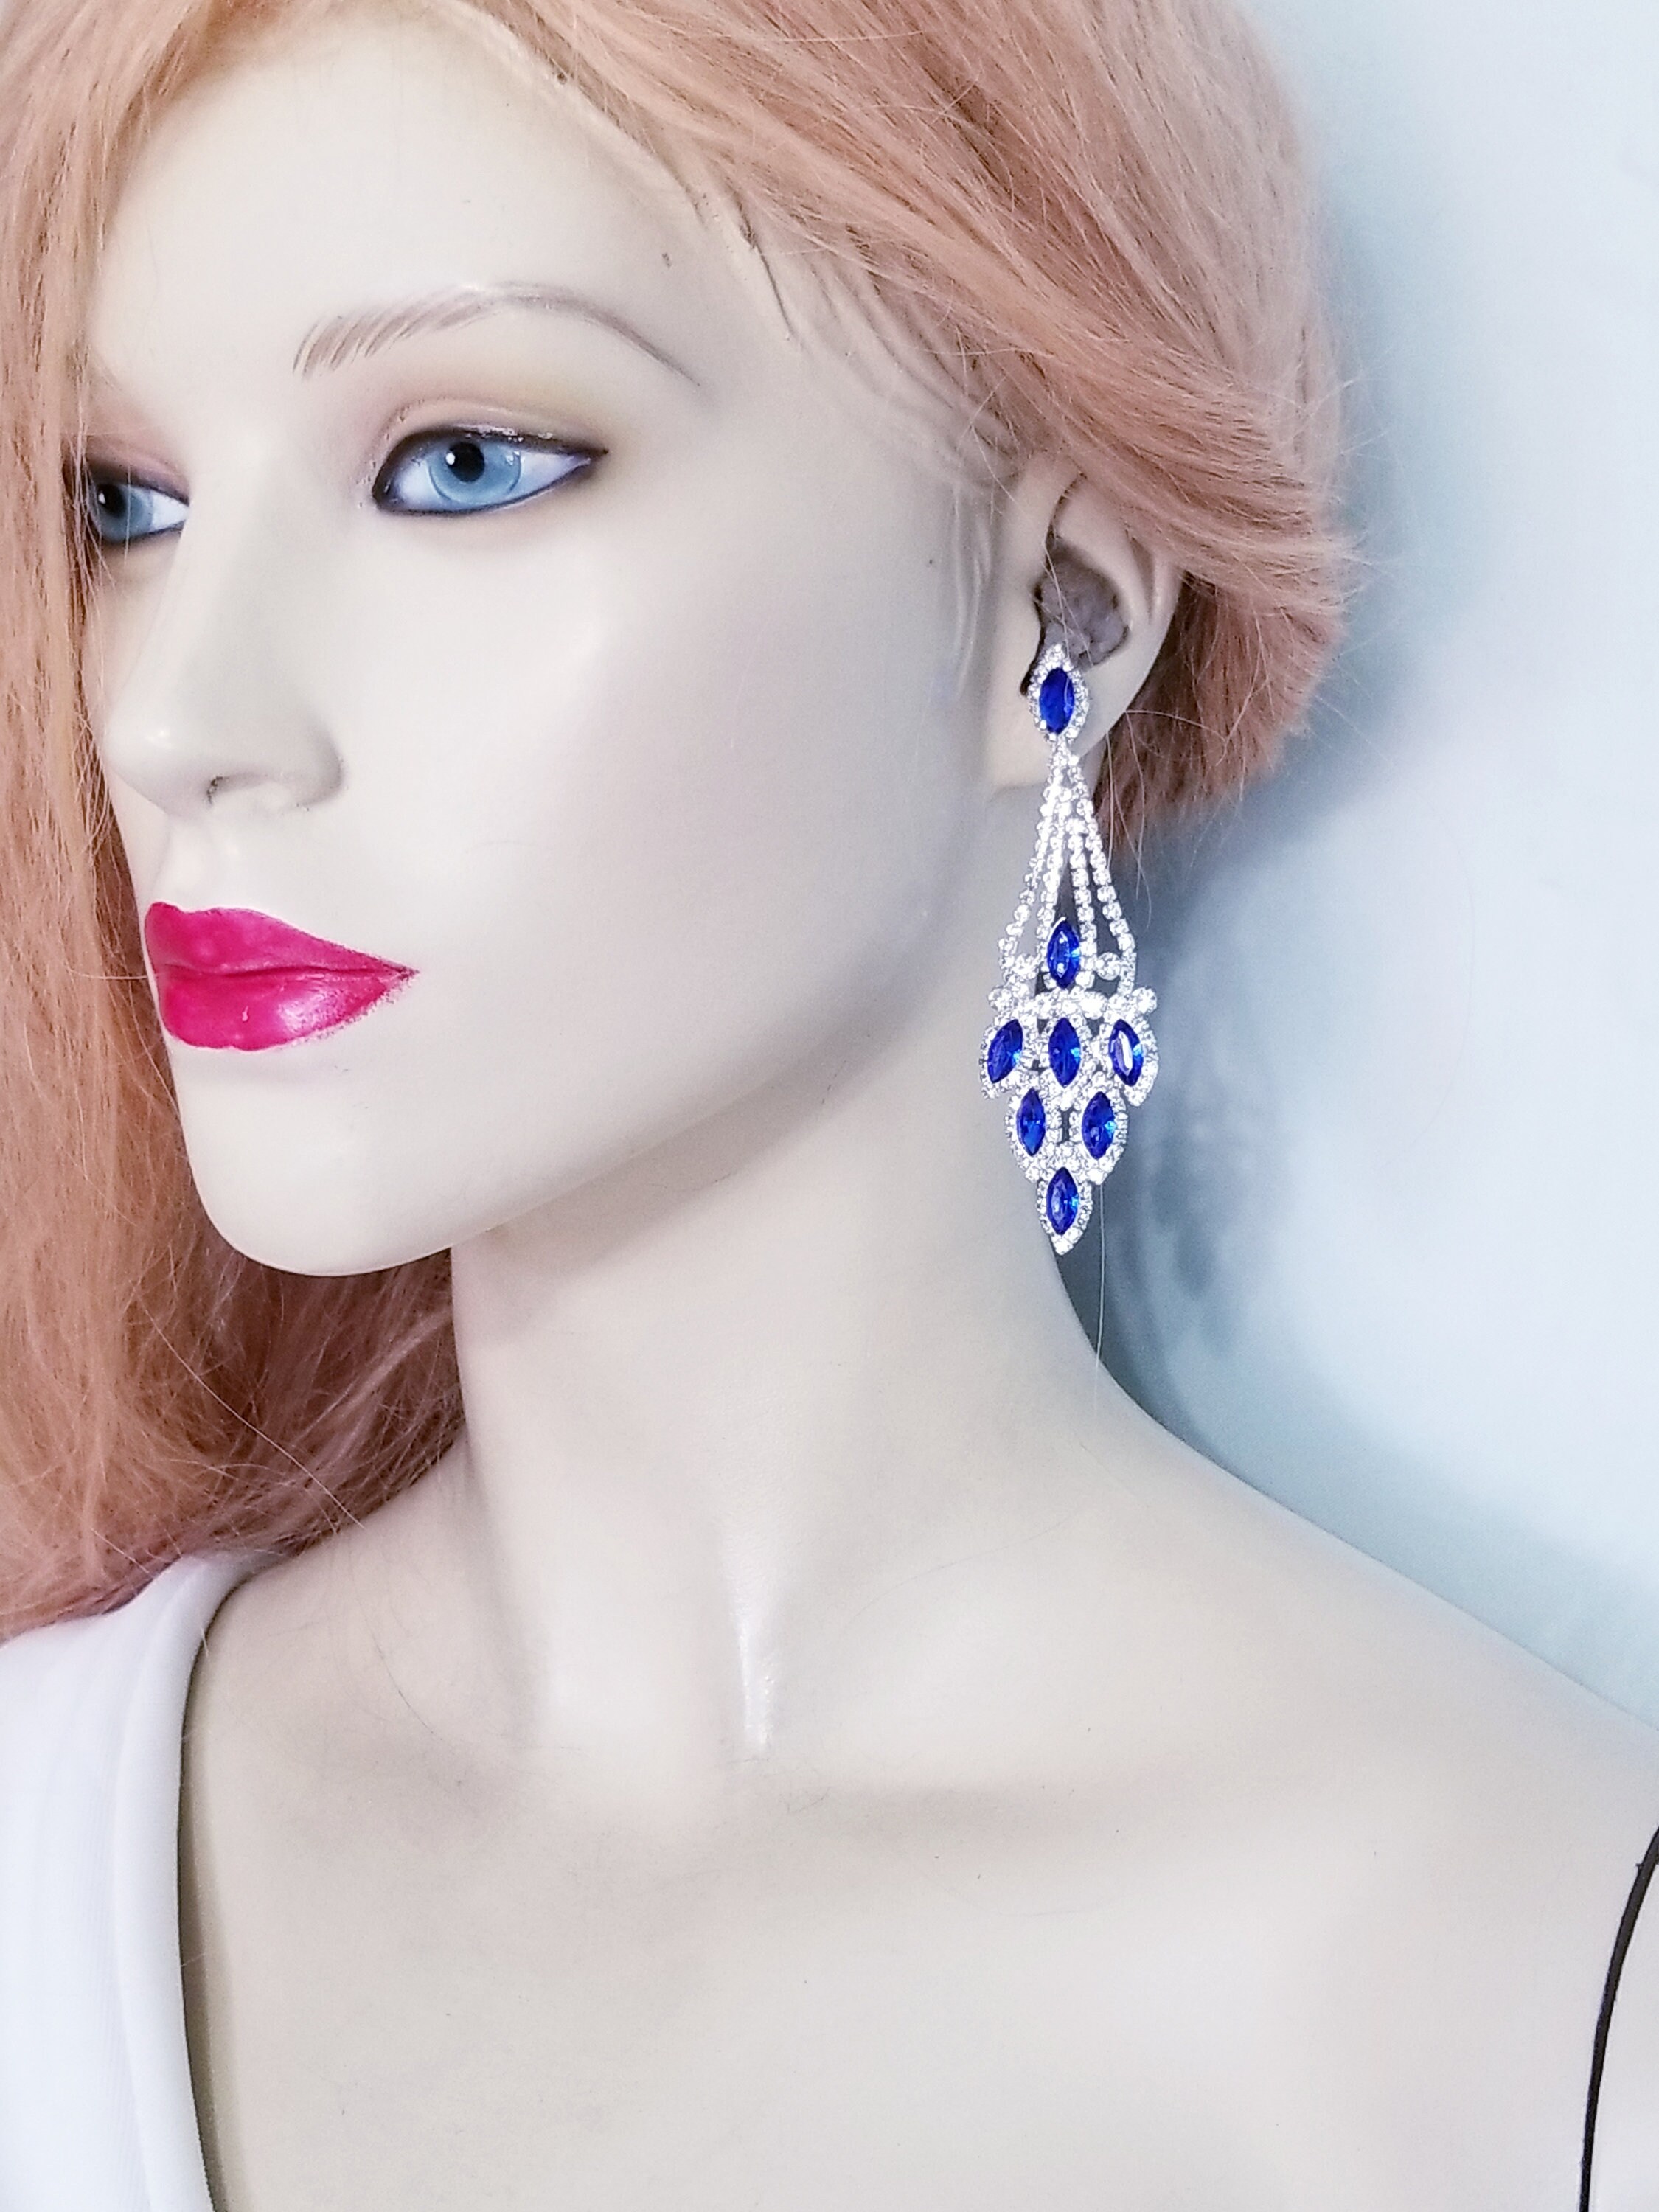 CLIP ON Earrings Rhinestone Crystal Oversized Multi Heart Drop Chandelier  4.7 in | eBay